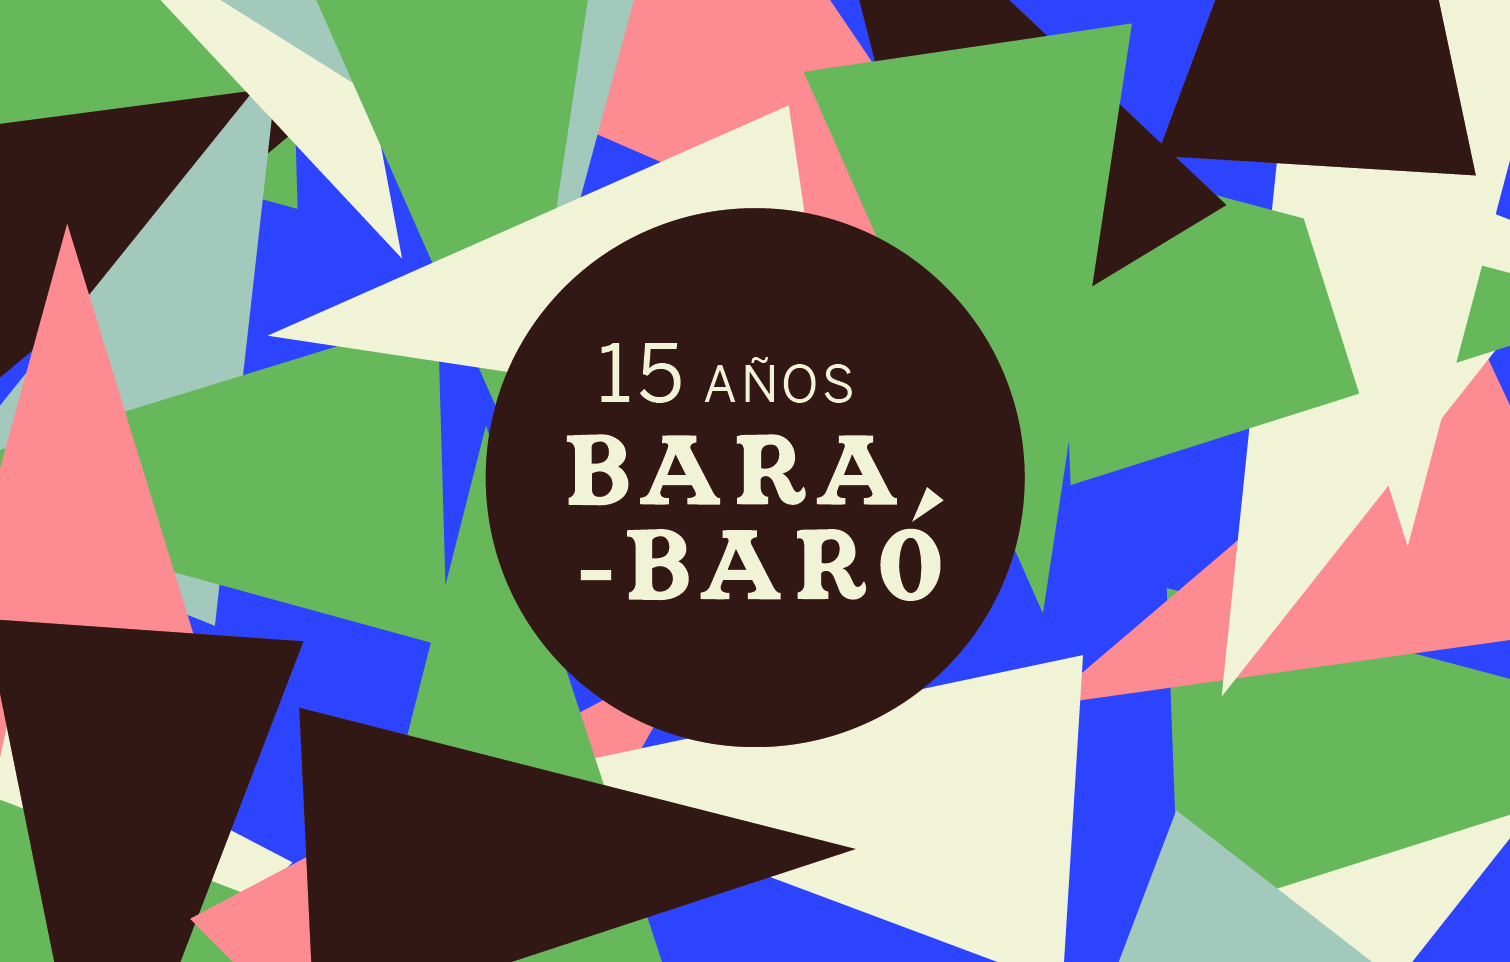 Tienda Bara - Baro